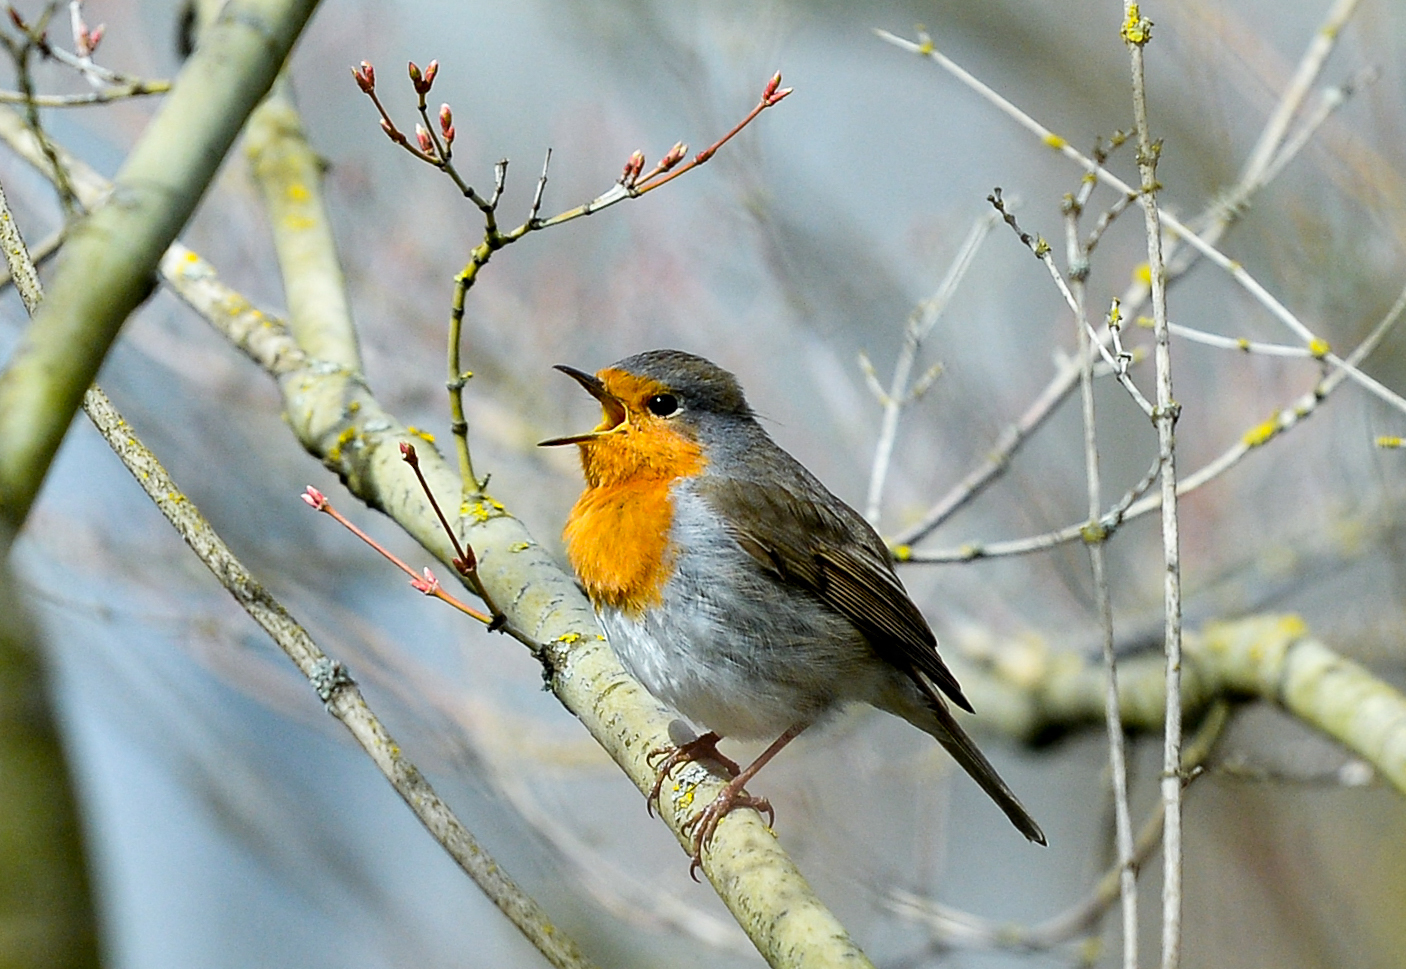 A madarak látványa és éneke is javítja az emberek mentális egészségét